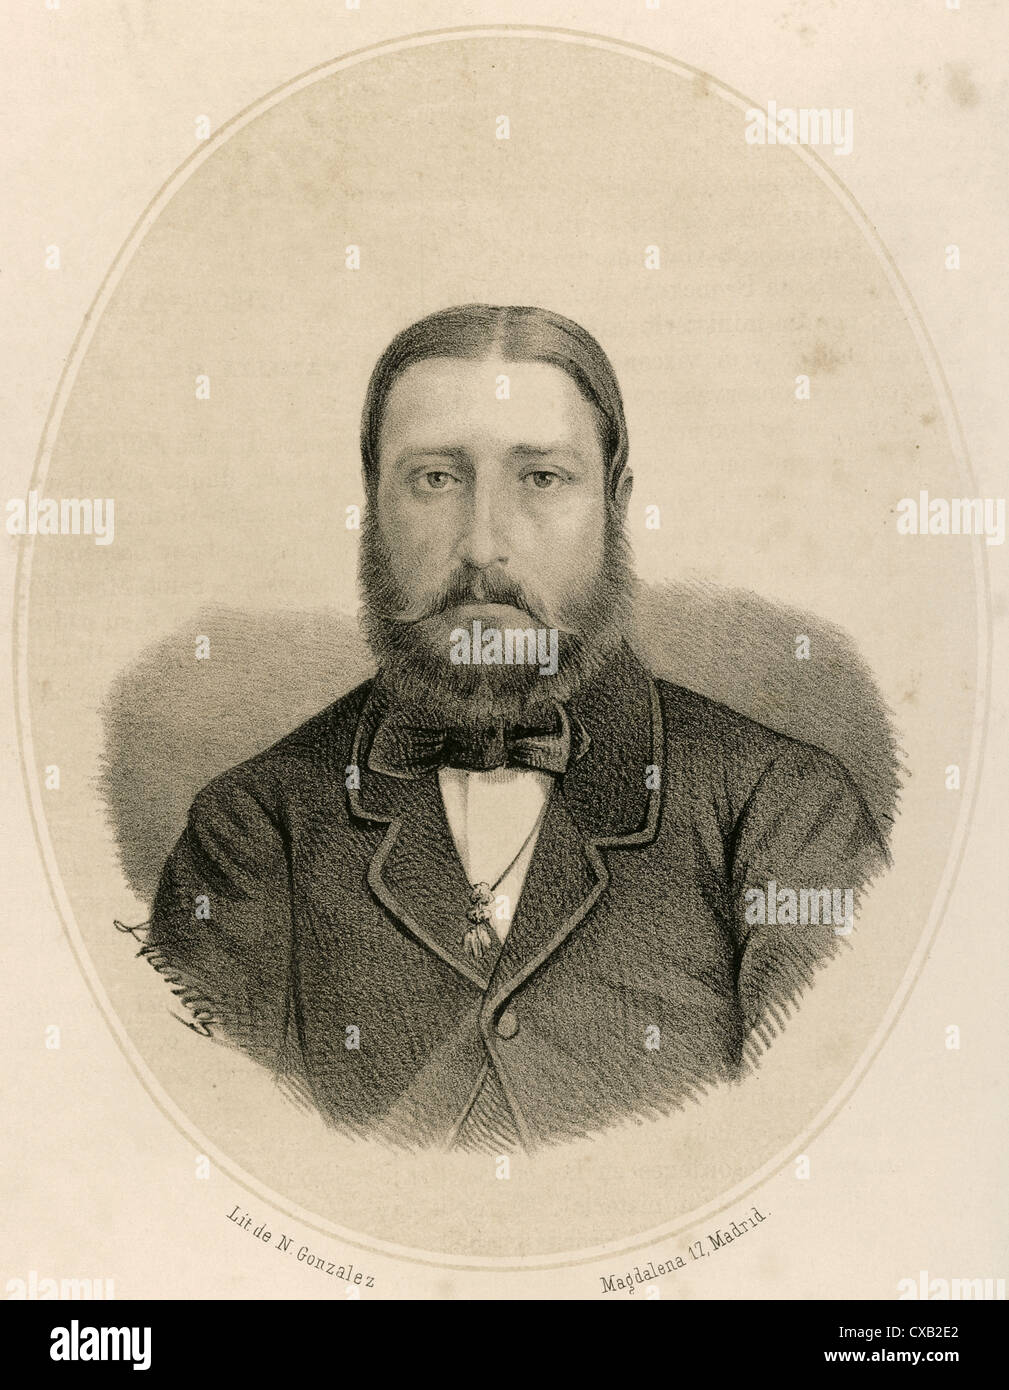 Leopoldo II (1835-1909). Re dei Belgi. Ritratto. Incisione, 1868. Da Llanta. Galeria universale. Foto Stock